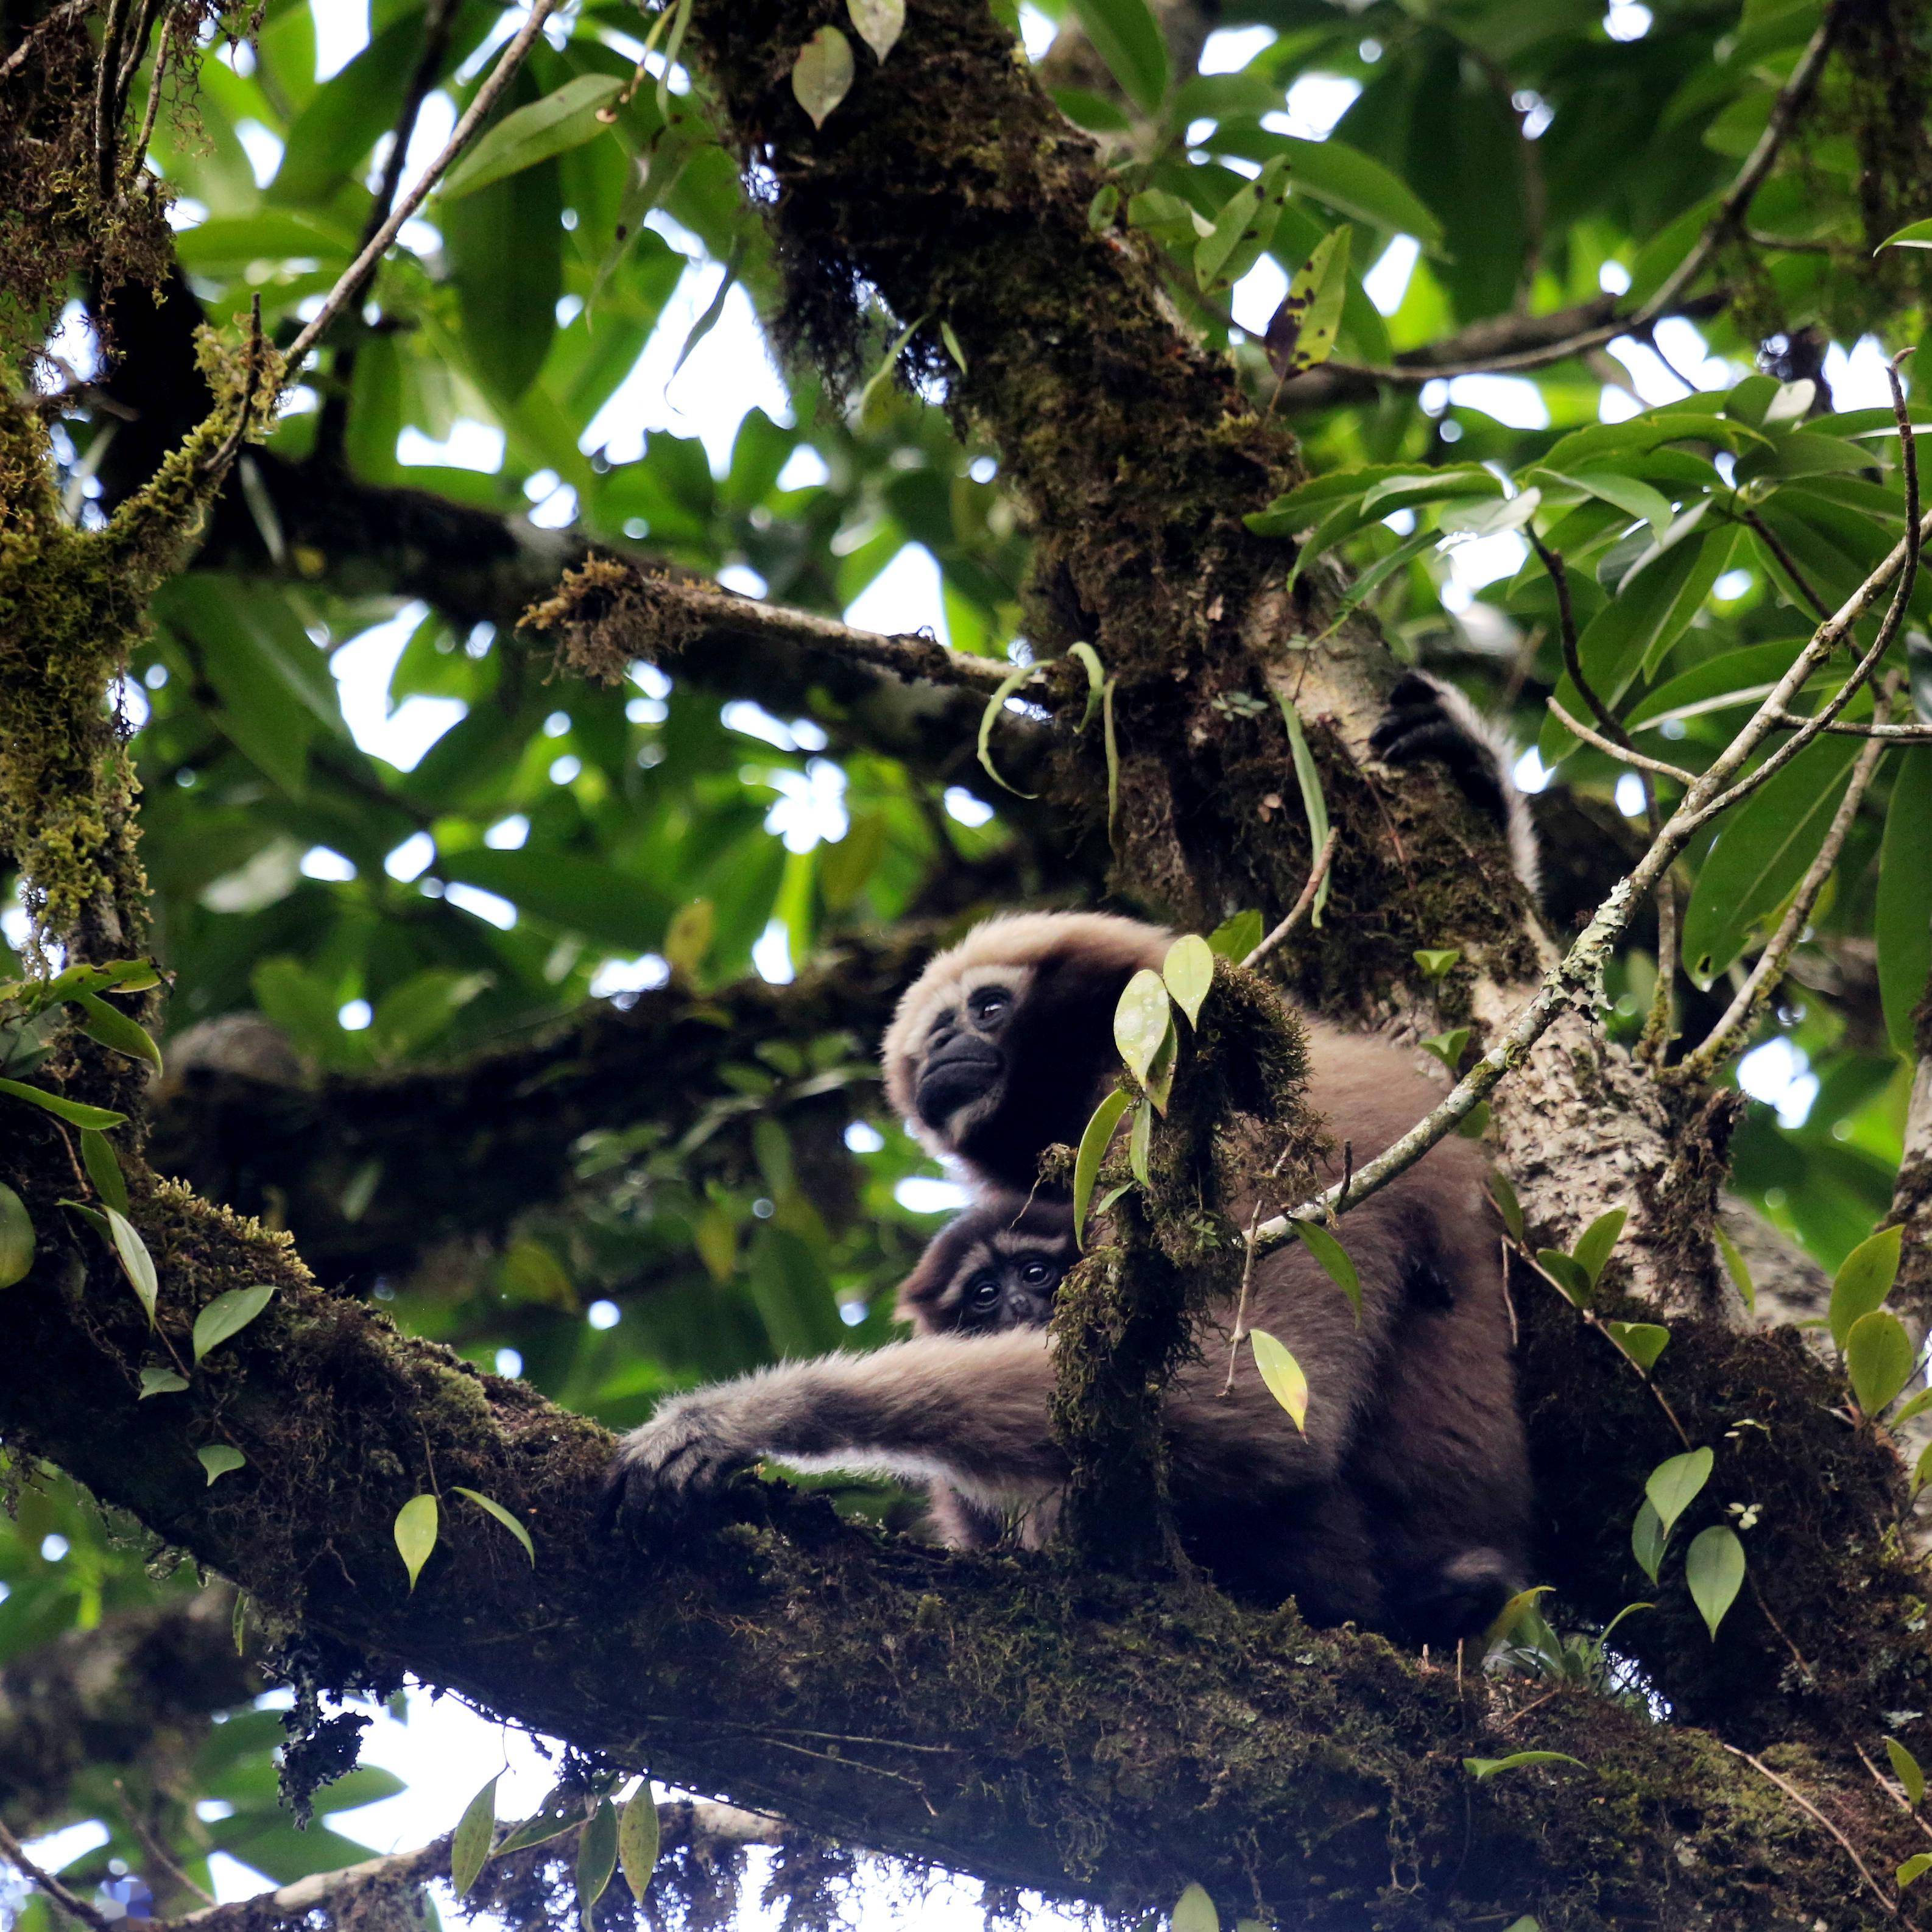 教授的研究团队开始在高黎贡山针对长臂猿和其他灵长类动物进行调查